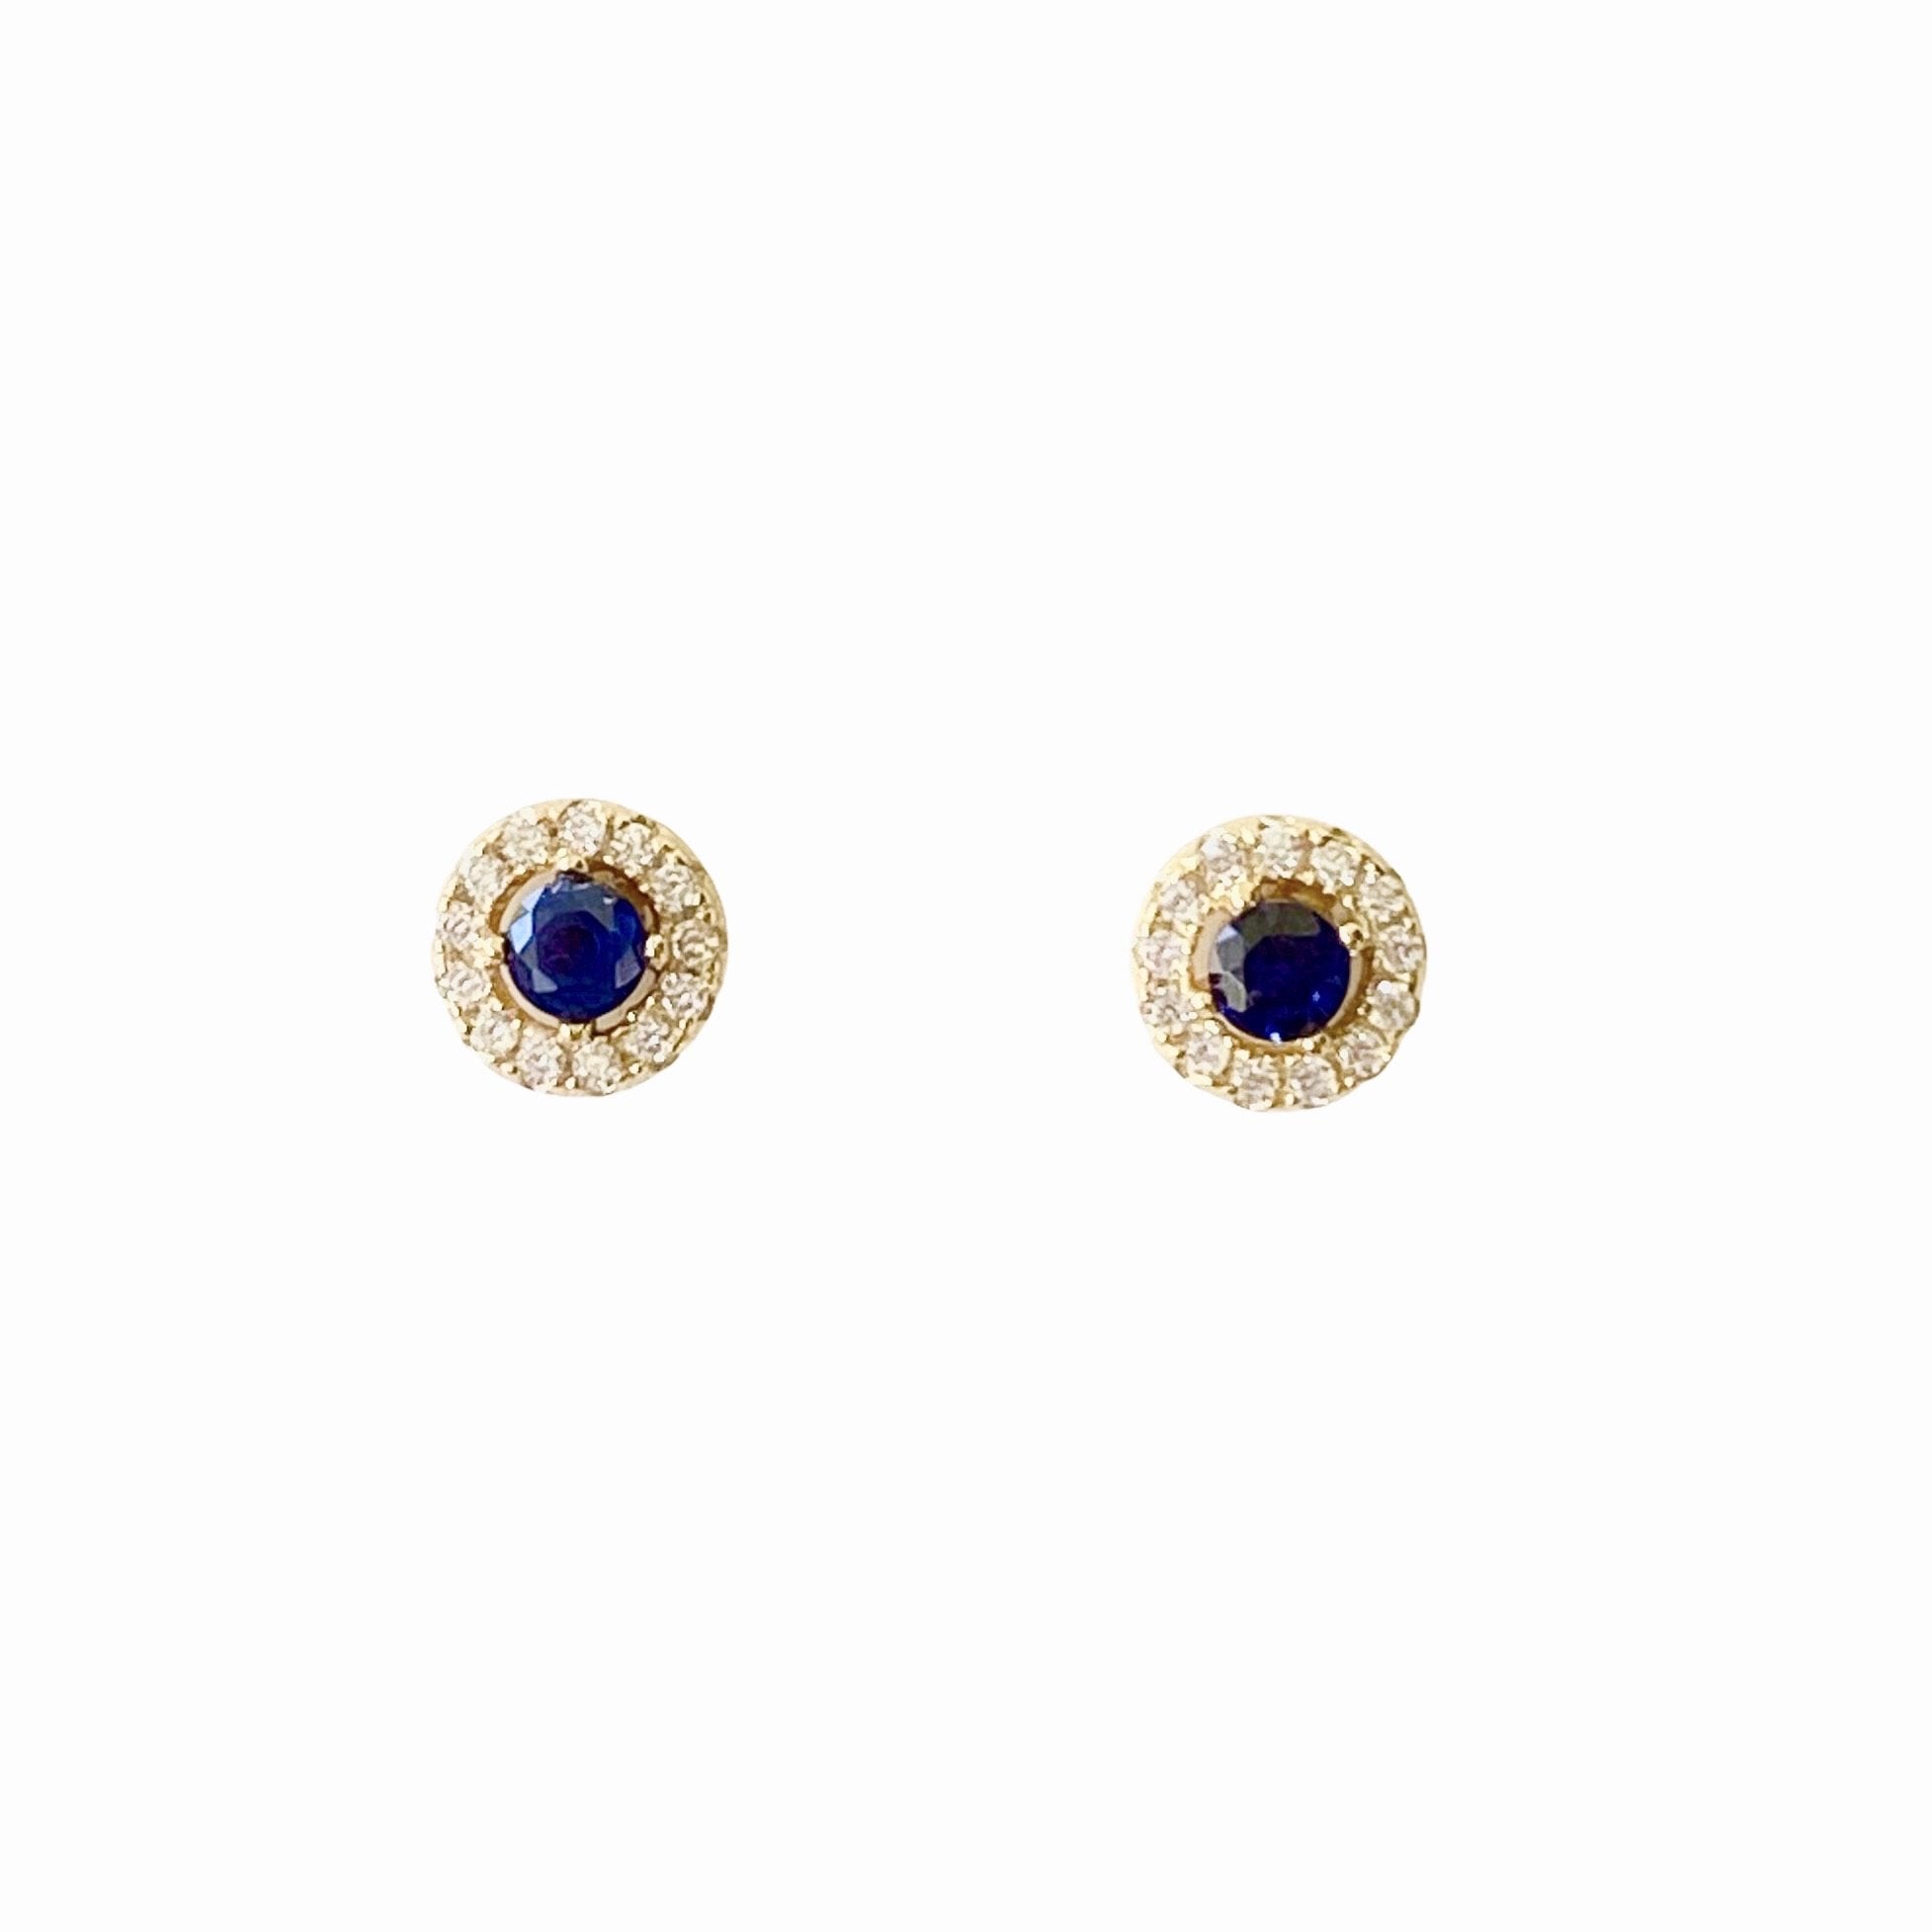 ROUND BLUE stud earrings